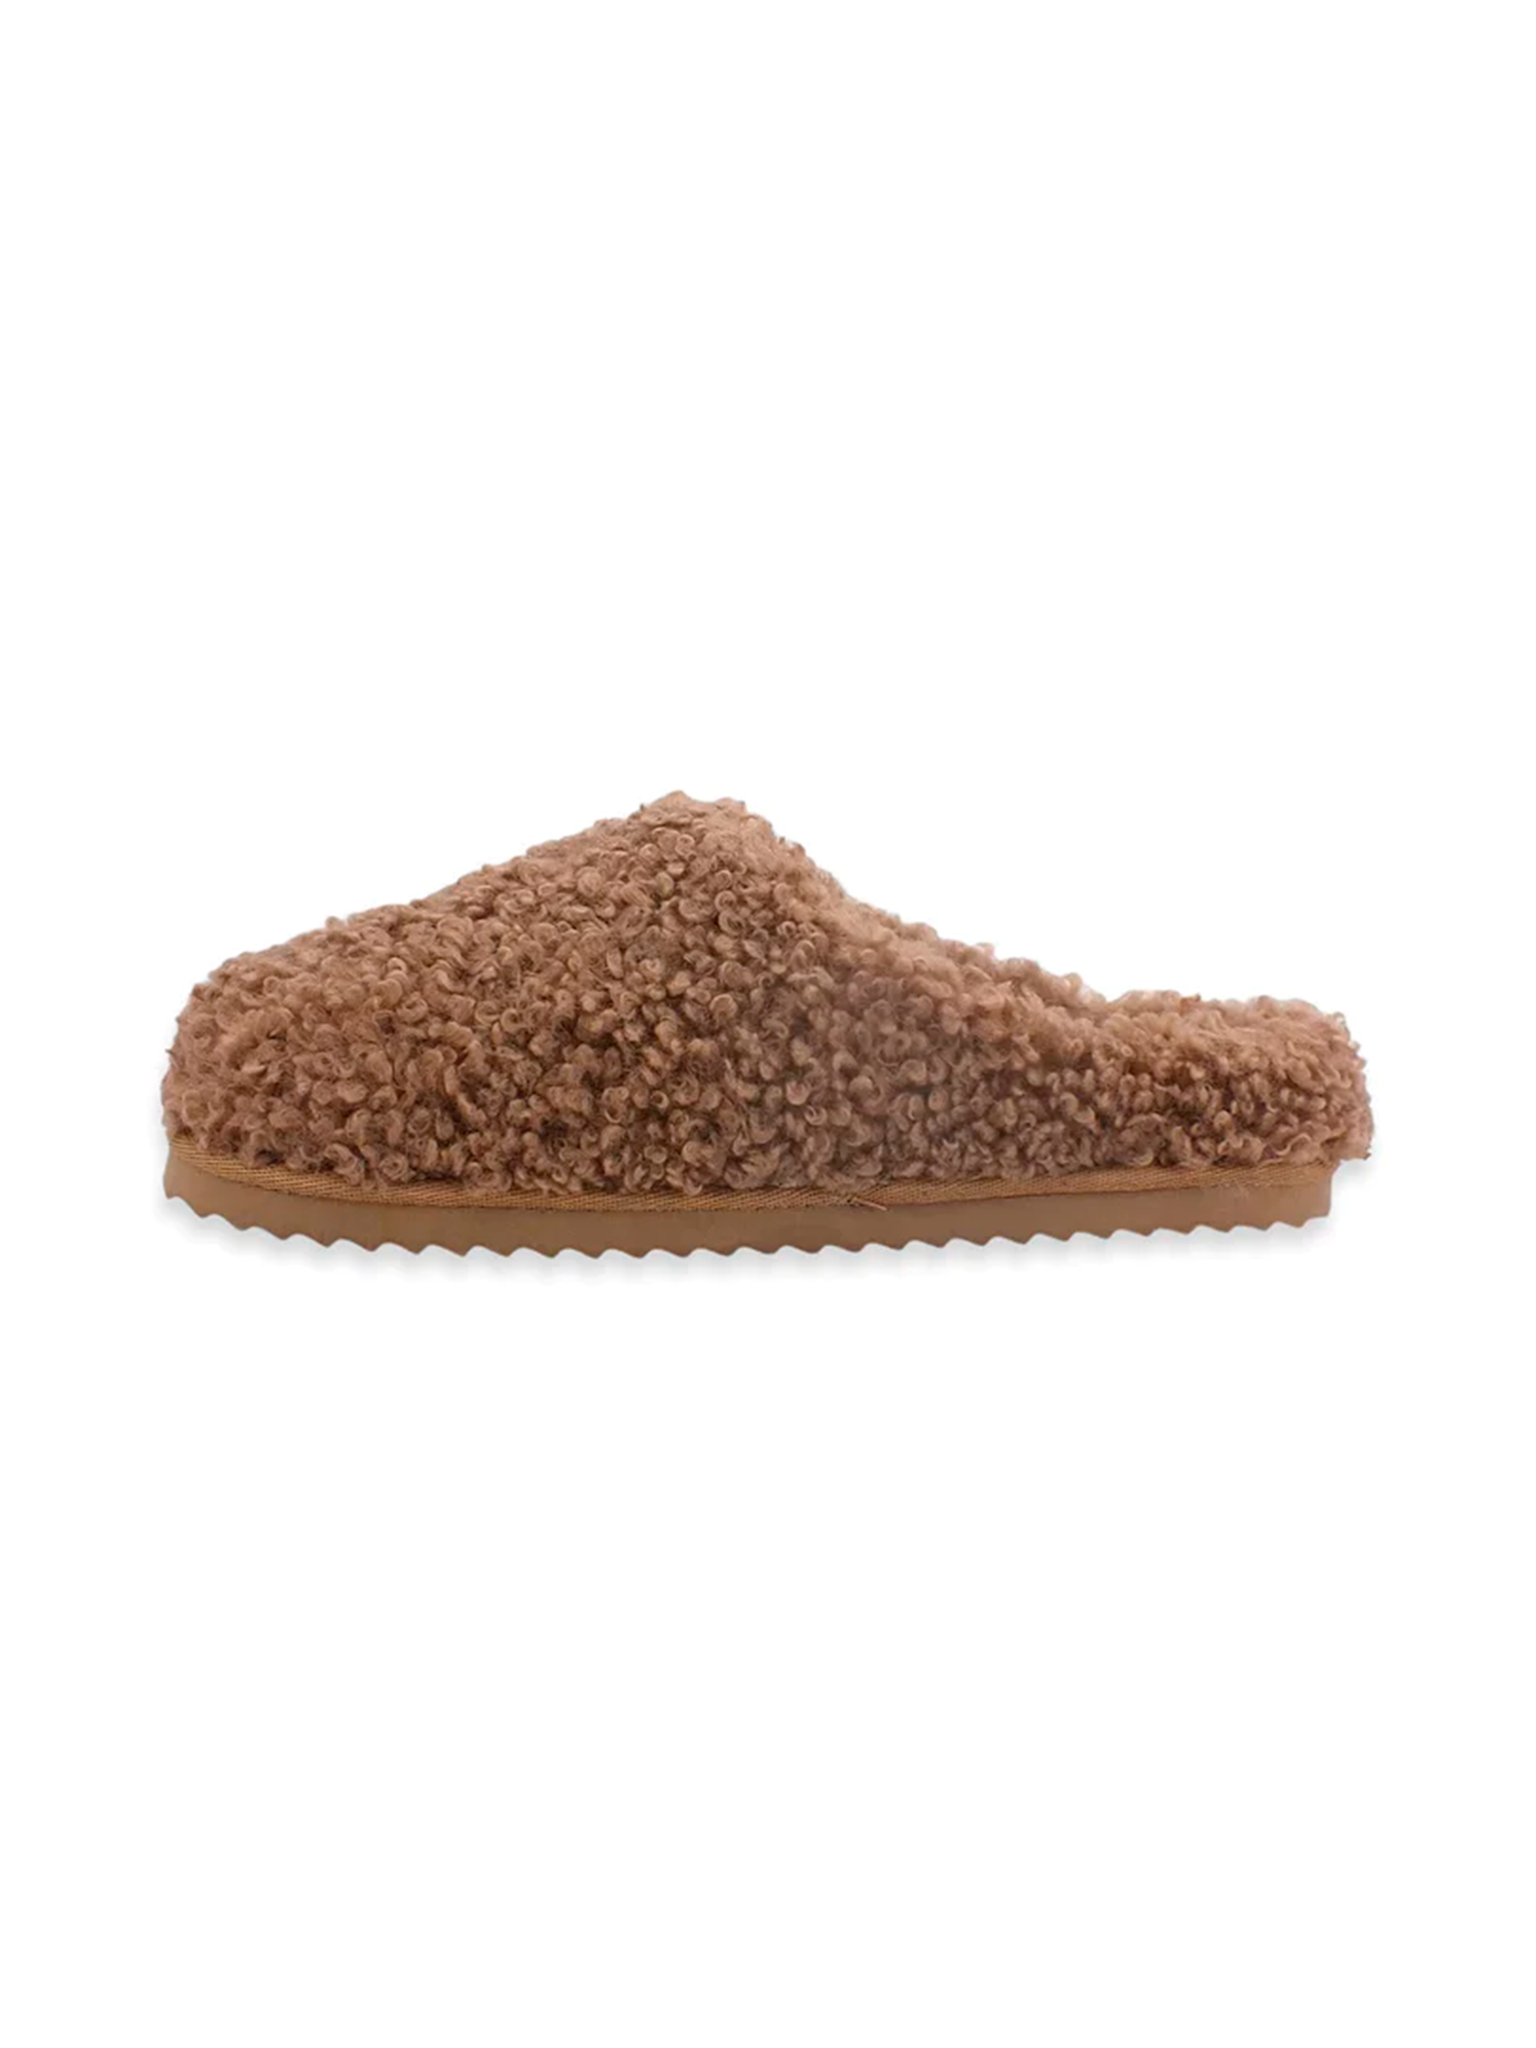 Furry slipper closed toe Tan